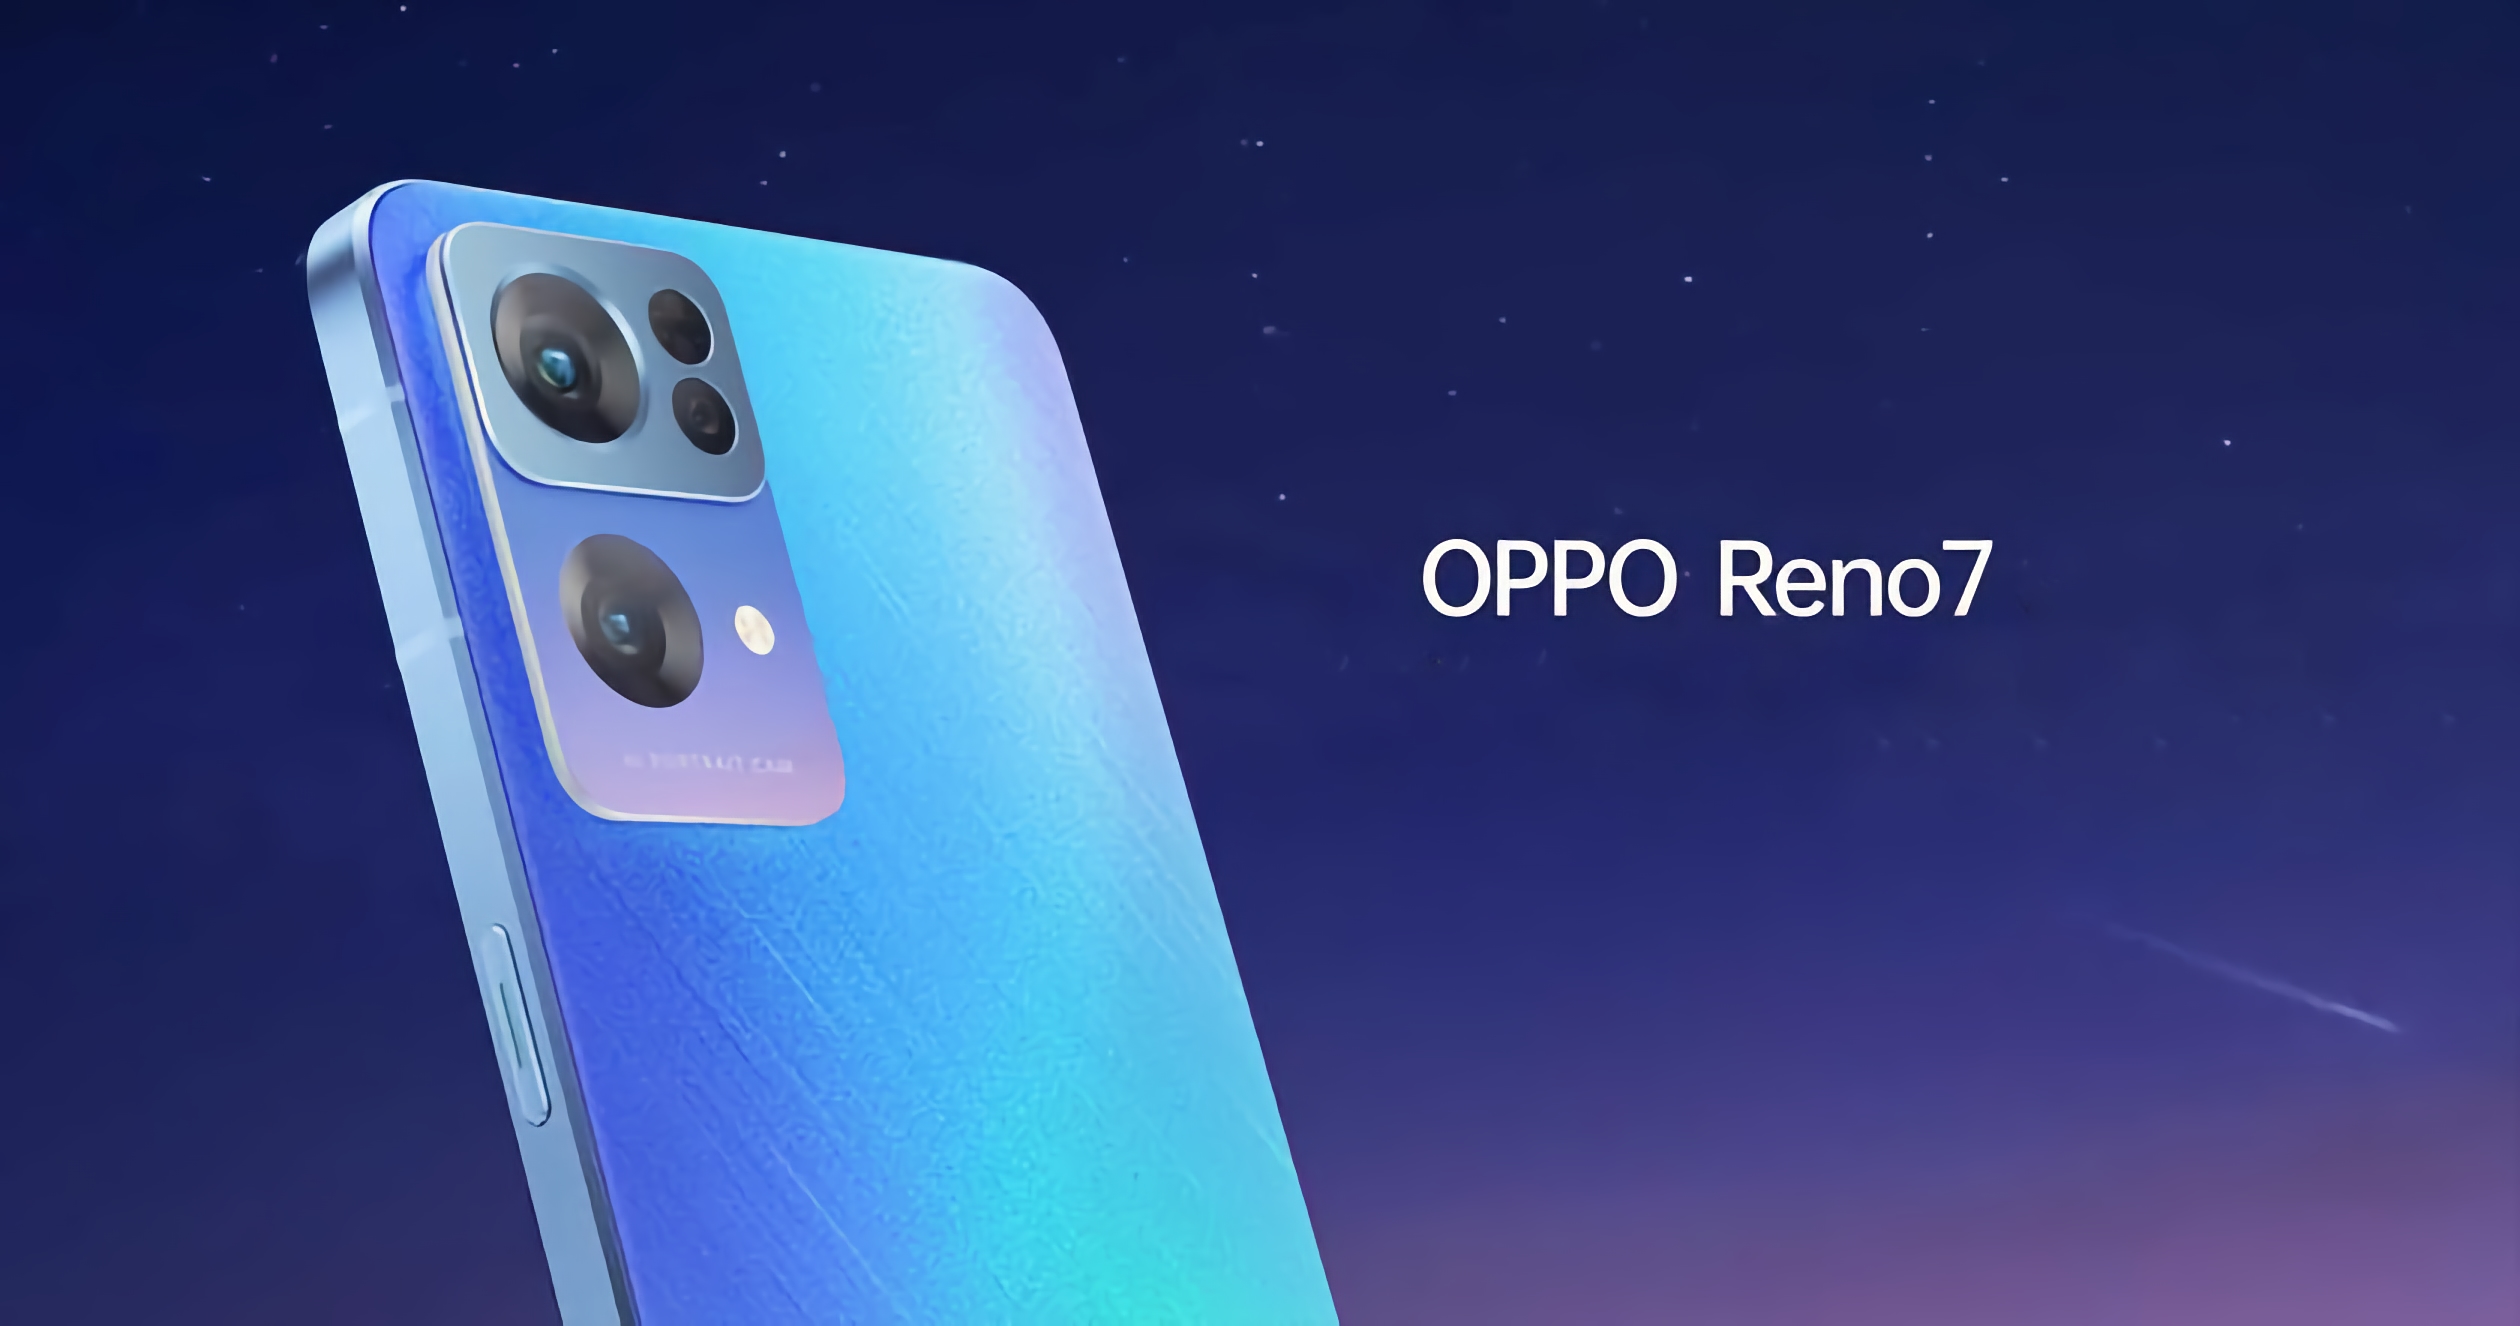 3 días antes del anuncio: imágenes y características de los teléfonos inteligentes OPPO Reno 7, OPPO Reno 7 Pro y OPPO Reno 7 SE se filtraron a la red